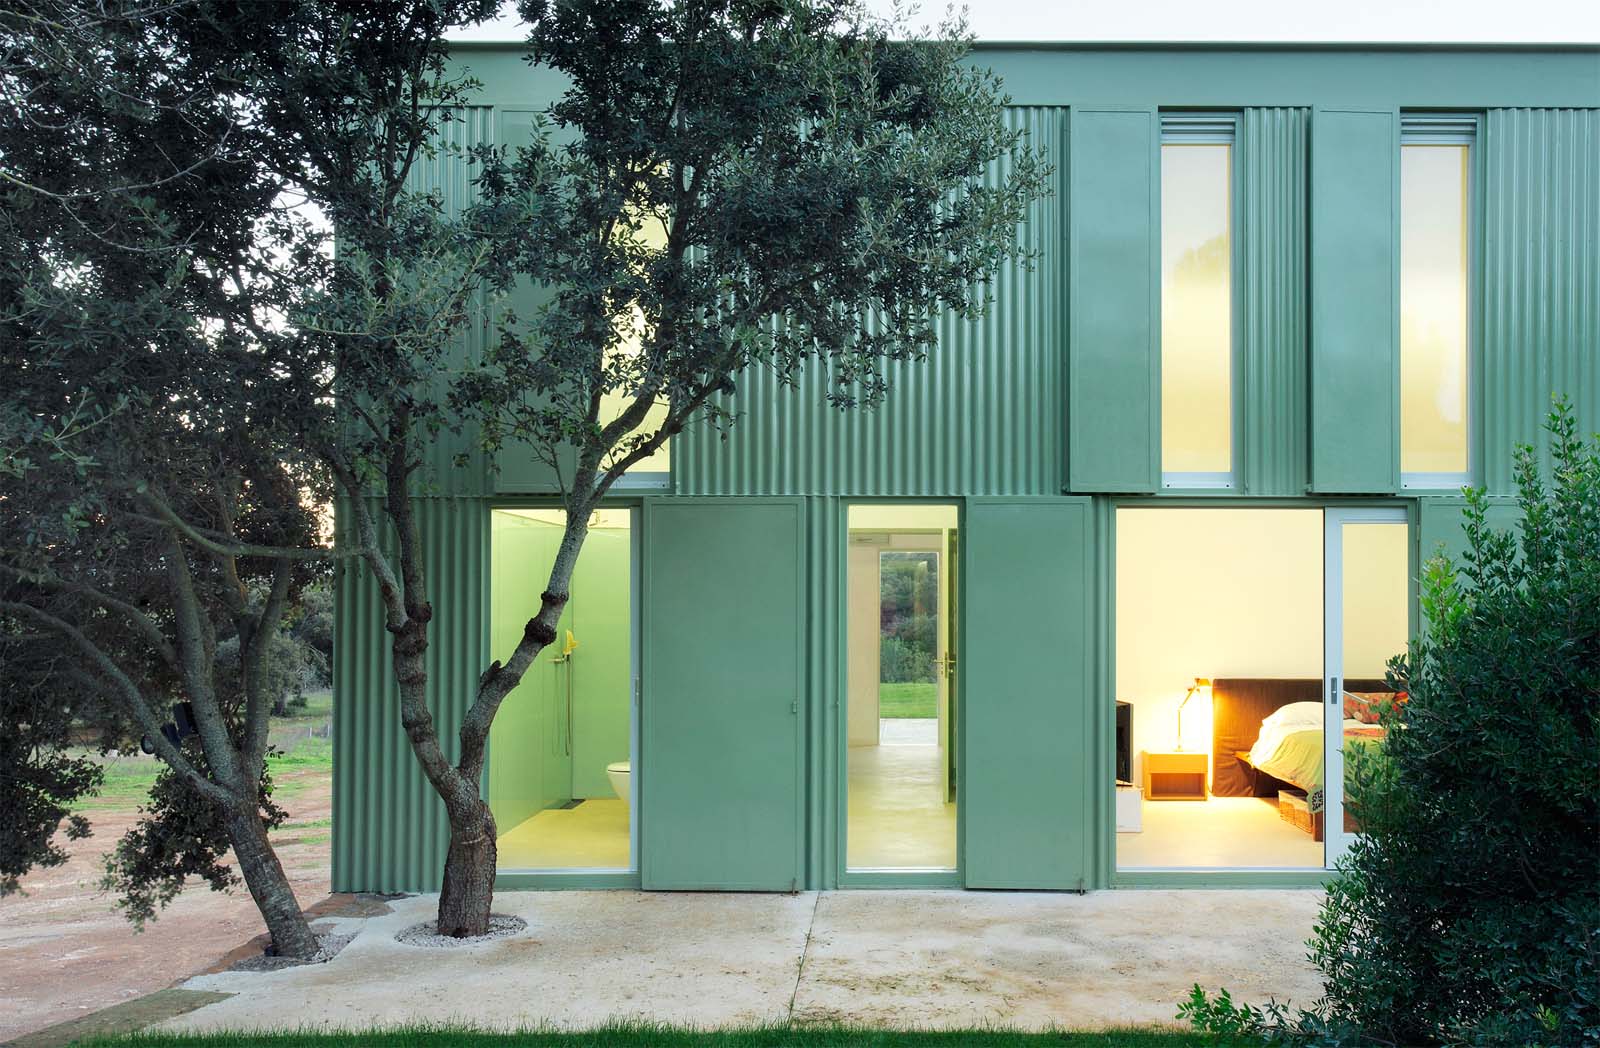 Razones para comprar una casa modular: mucho diseño, menos tiempo de espera y más armonía con el paisaje